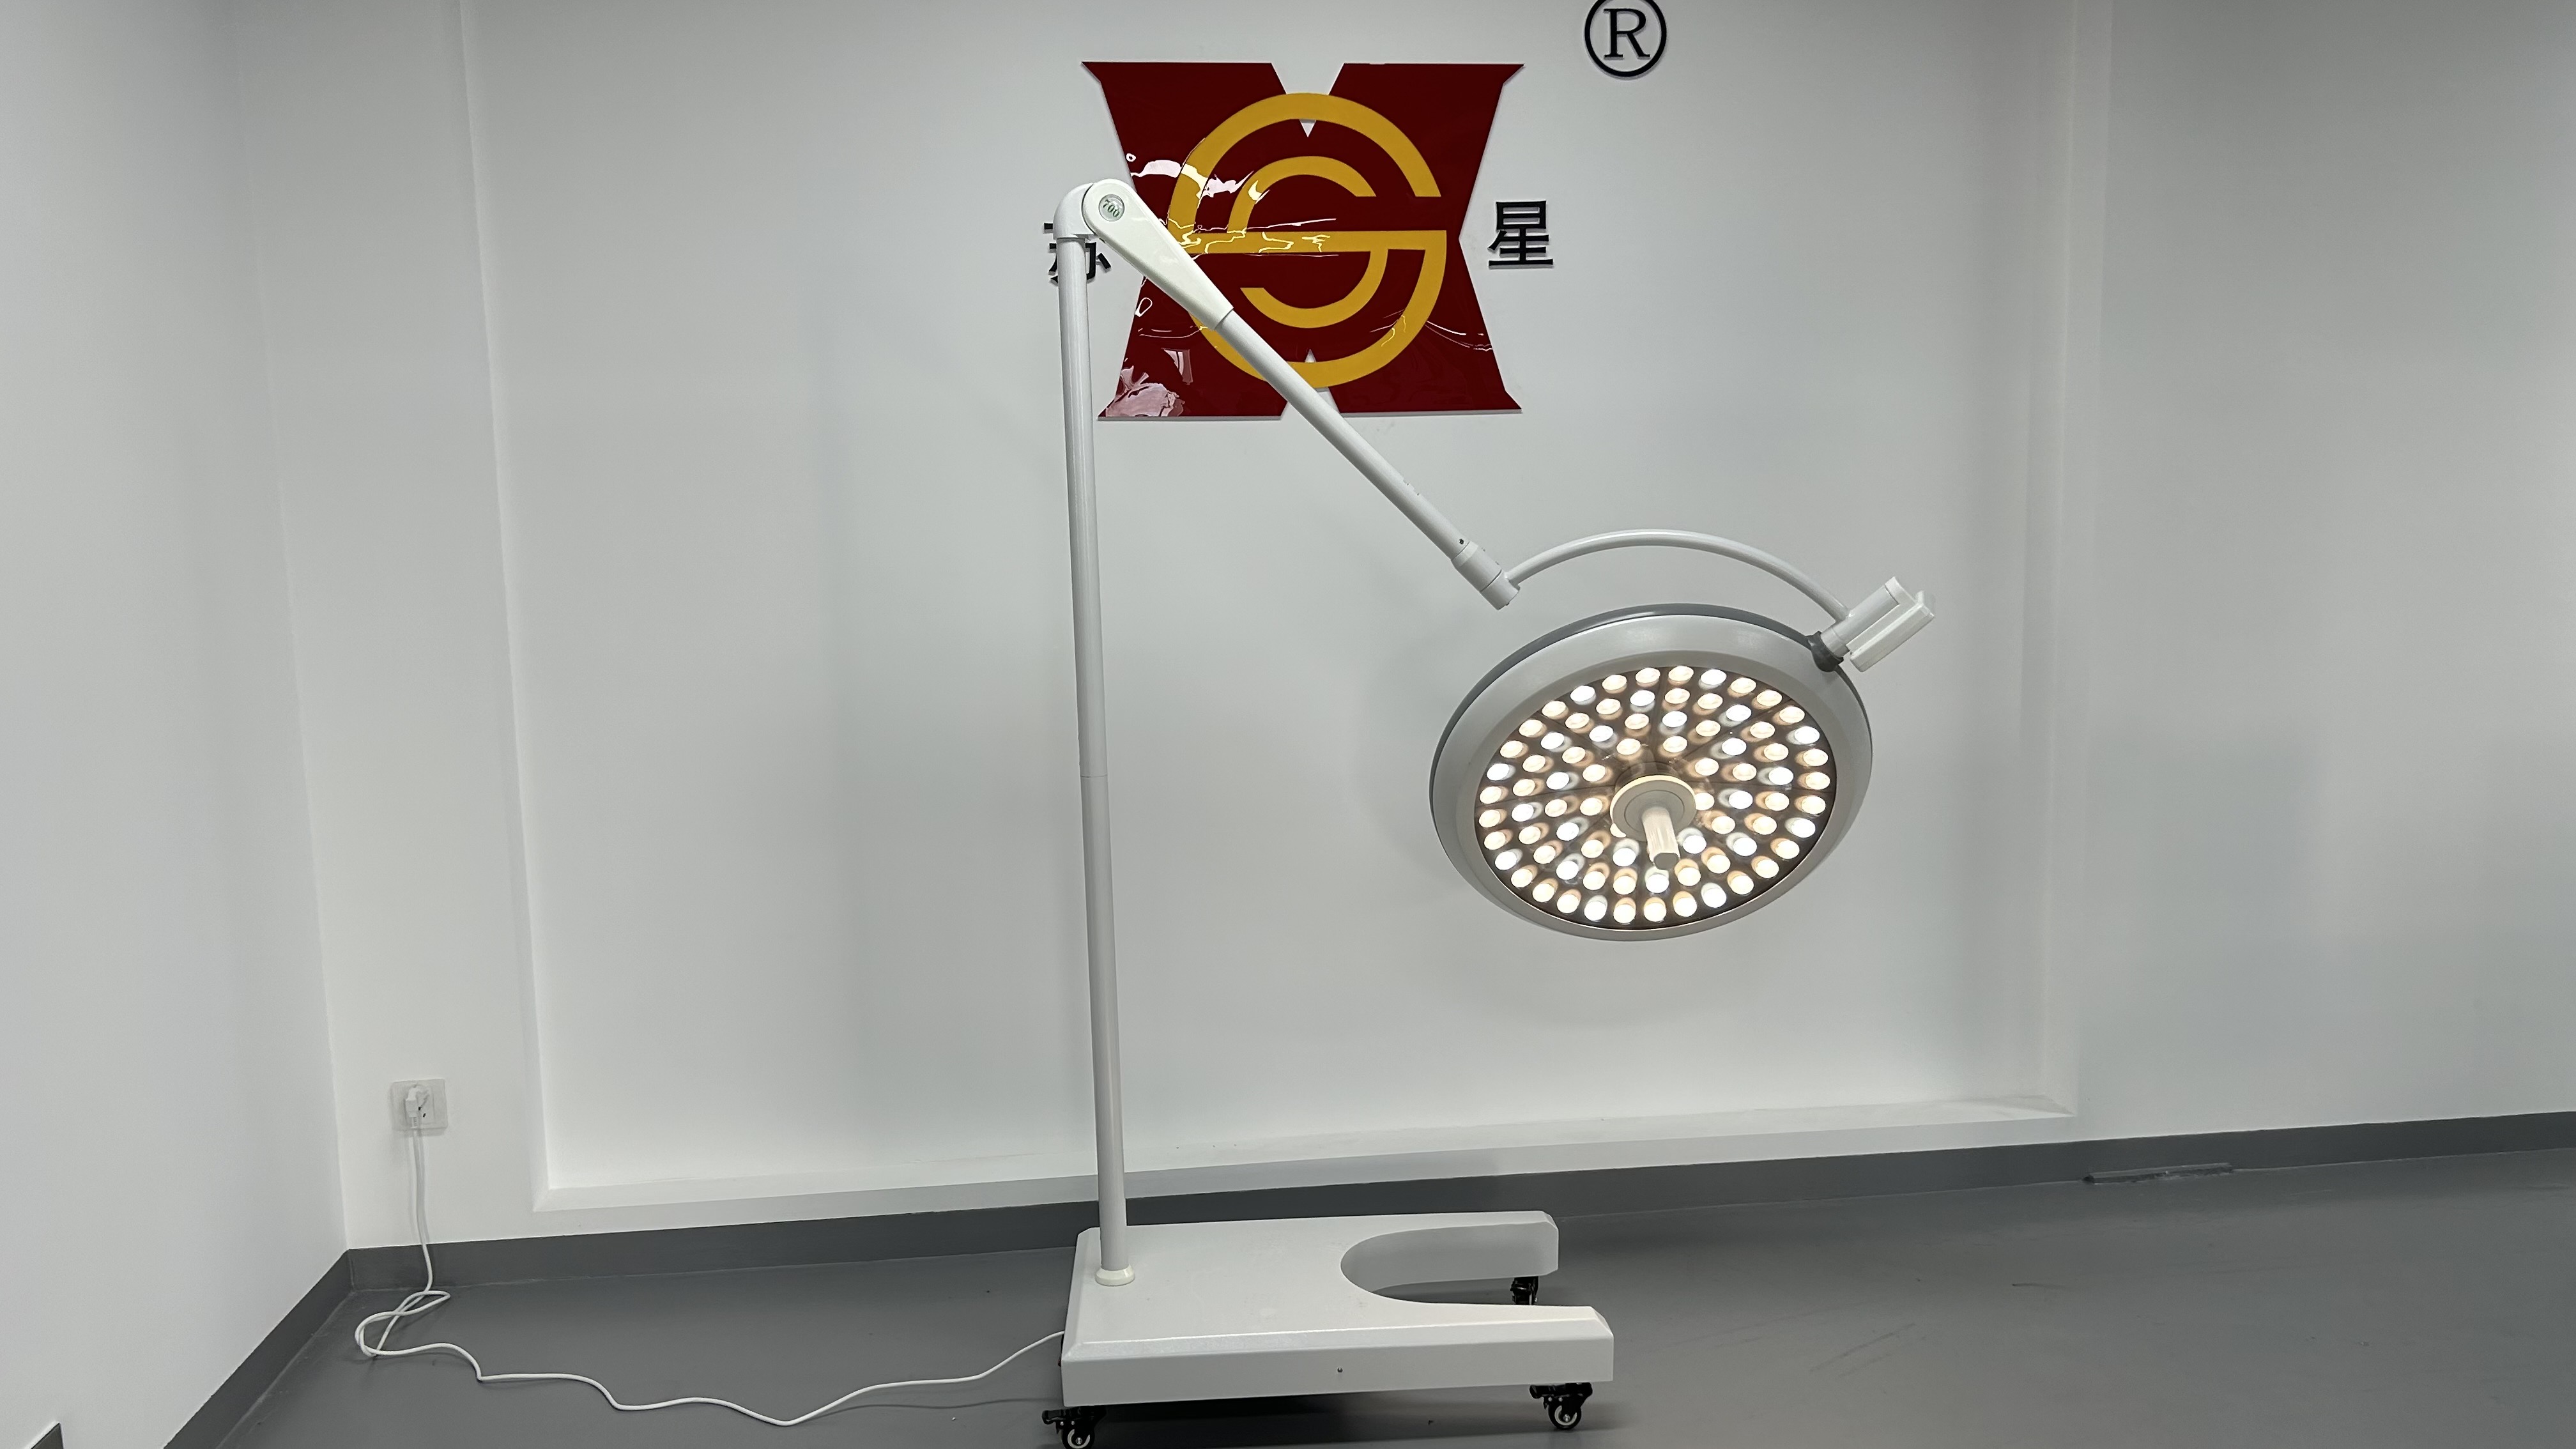 Lumière portative de salle d'opération d'endoscope de lampe d'opération de LED de support mobile d'hôpital